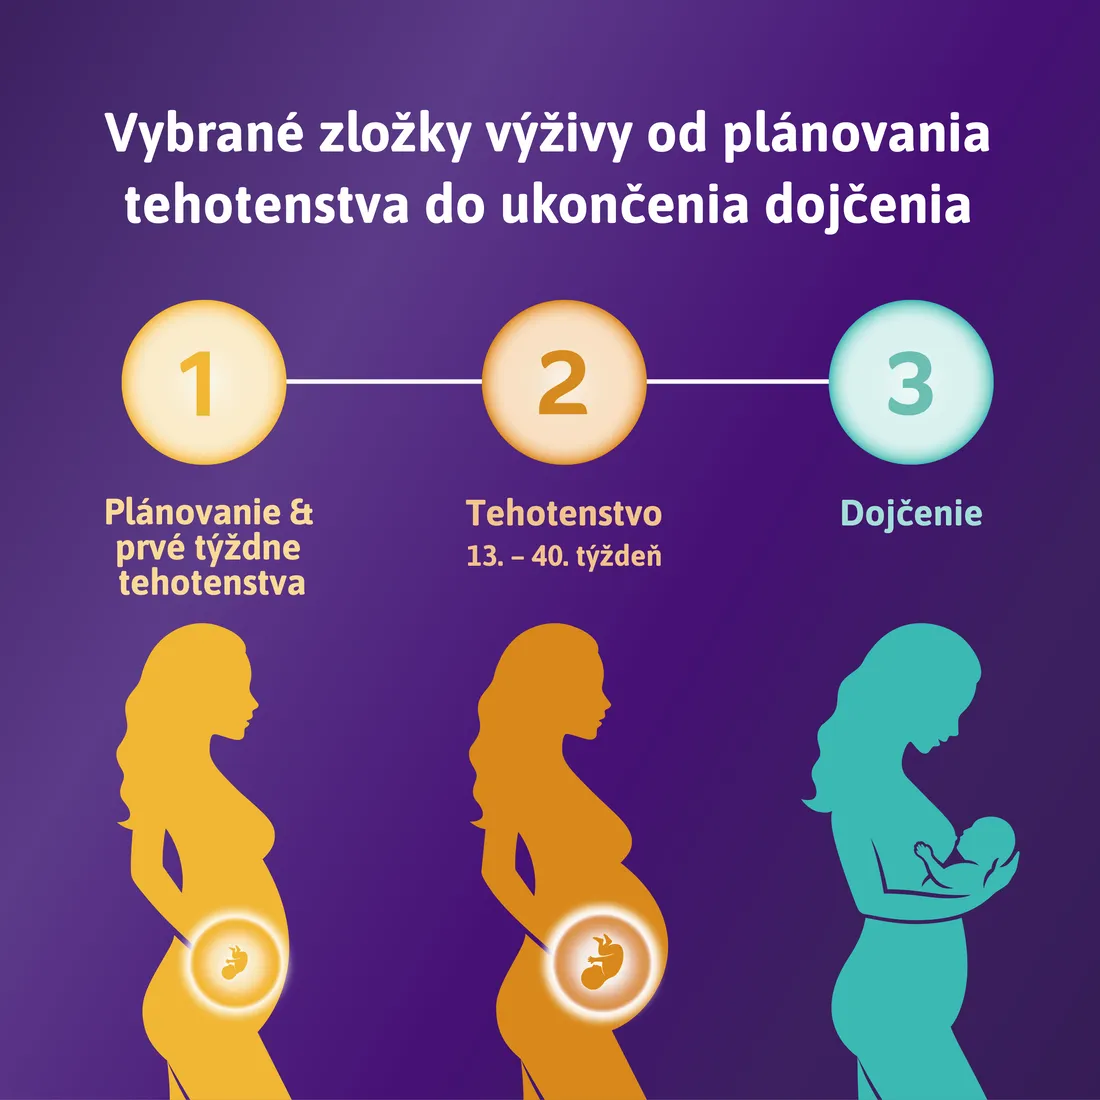 Femibion 1 Plánovanie a prvé týždne tehotenstva, 56 tbl 1×56 tbl, výživový doplnok